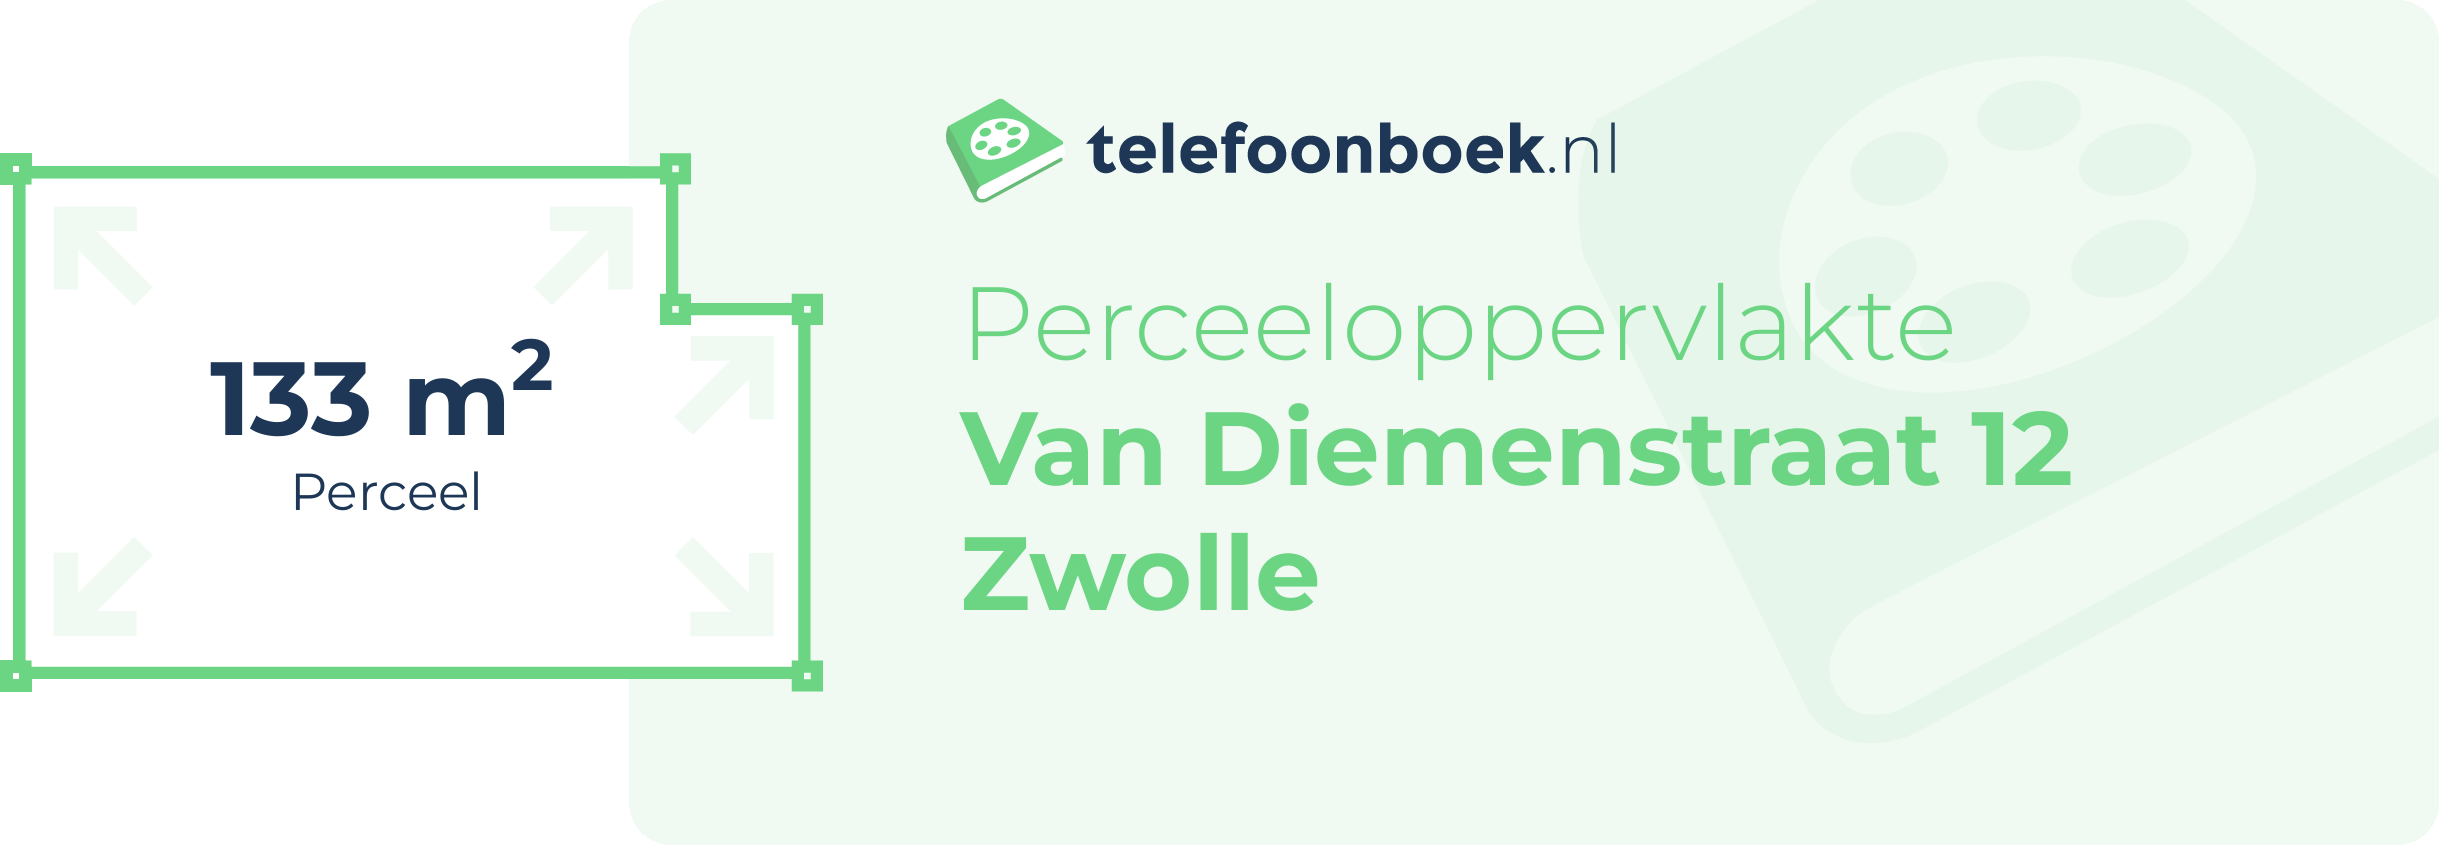 Perceeloppervlakte Van Diemenstraat 12 Zwolle